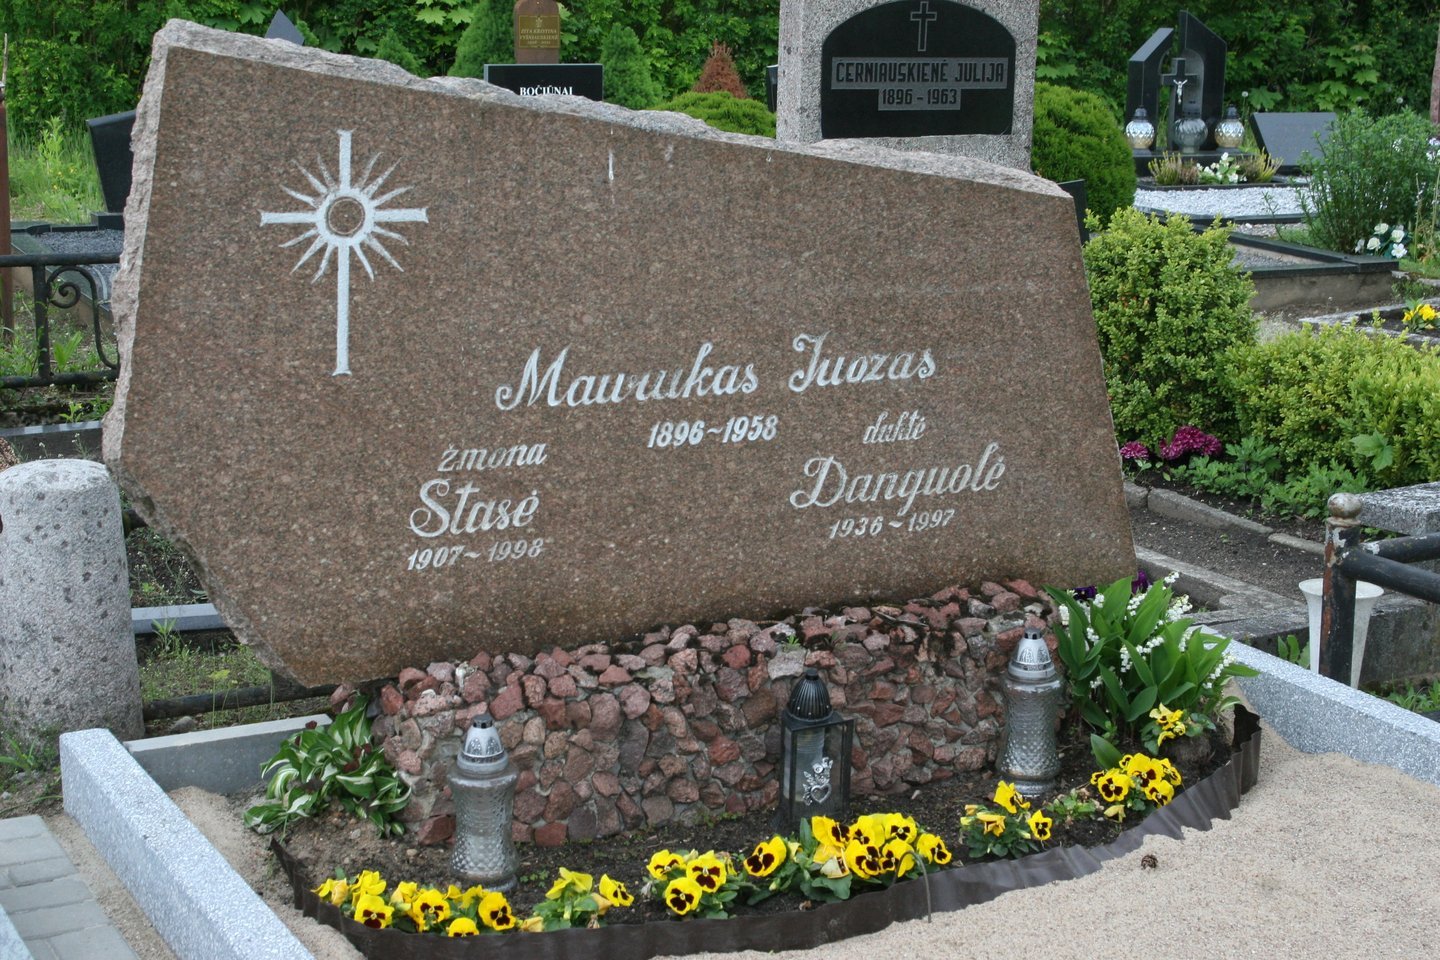  Paskutiniojo Marijampolės burmistro J.Mauruko šeima palaidota miesto senosiose kapinėse<br> L.Juodzevičienės nuotr.